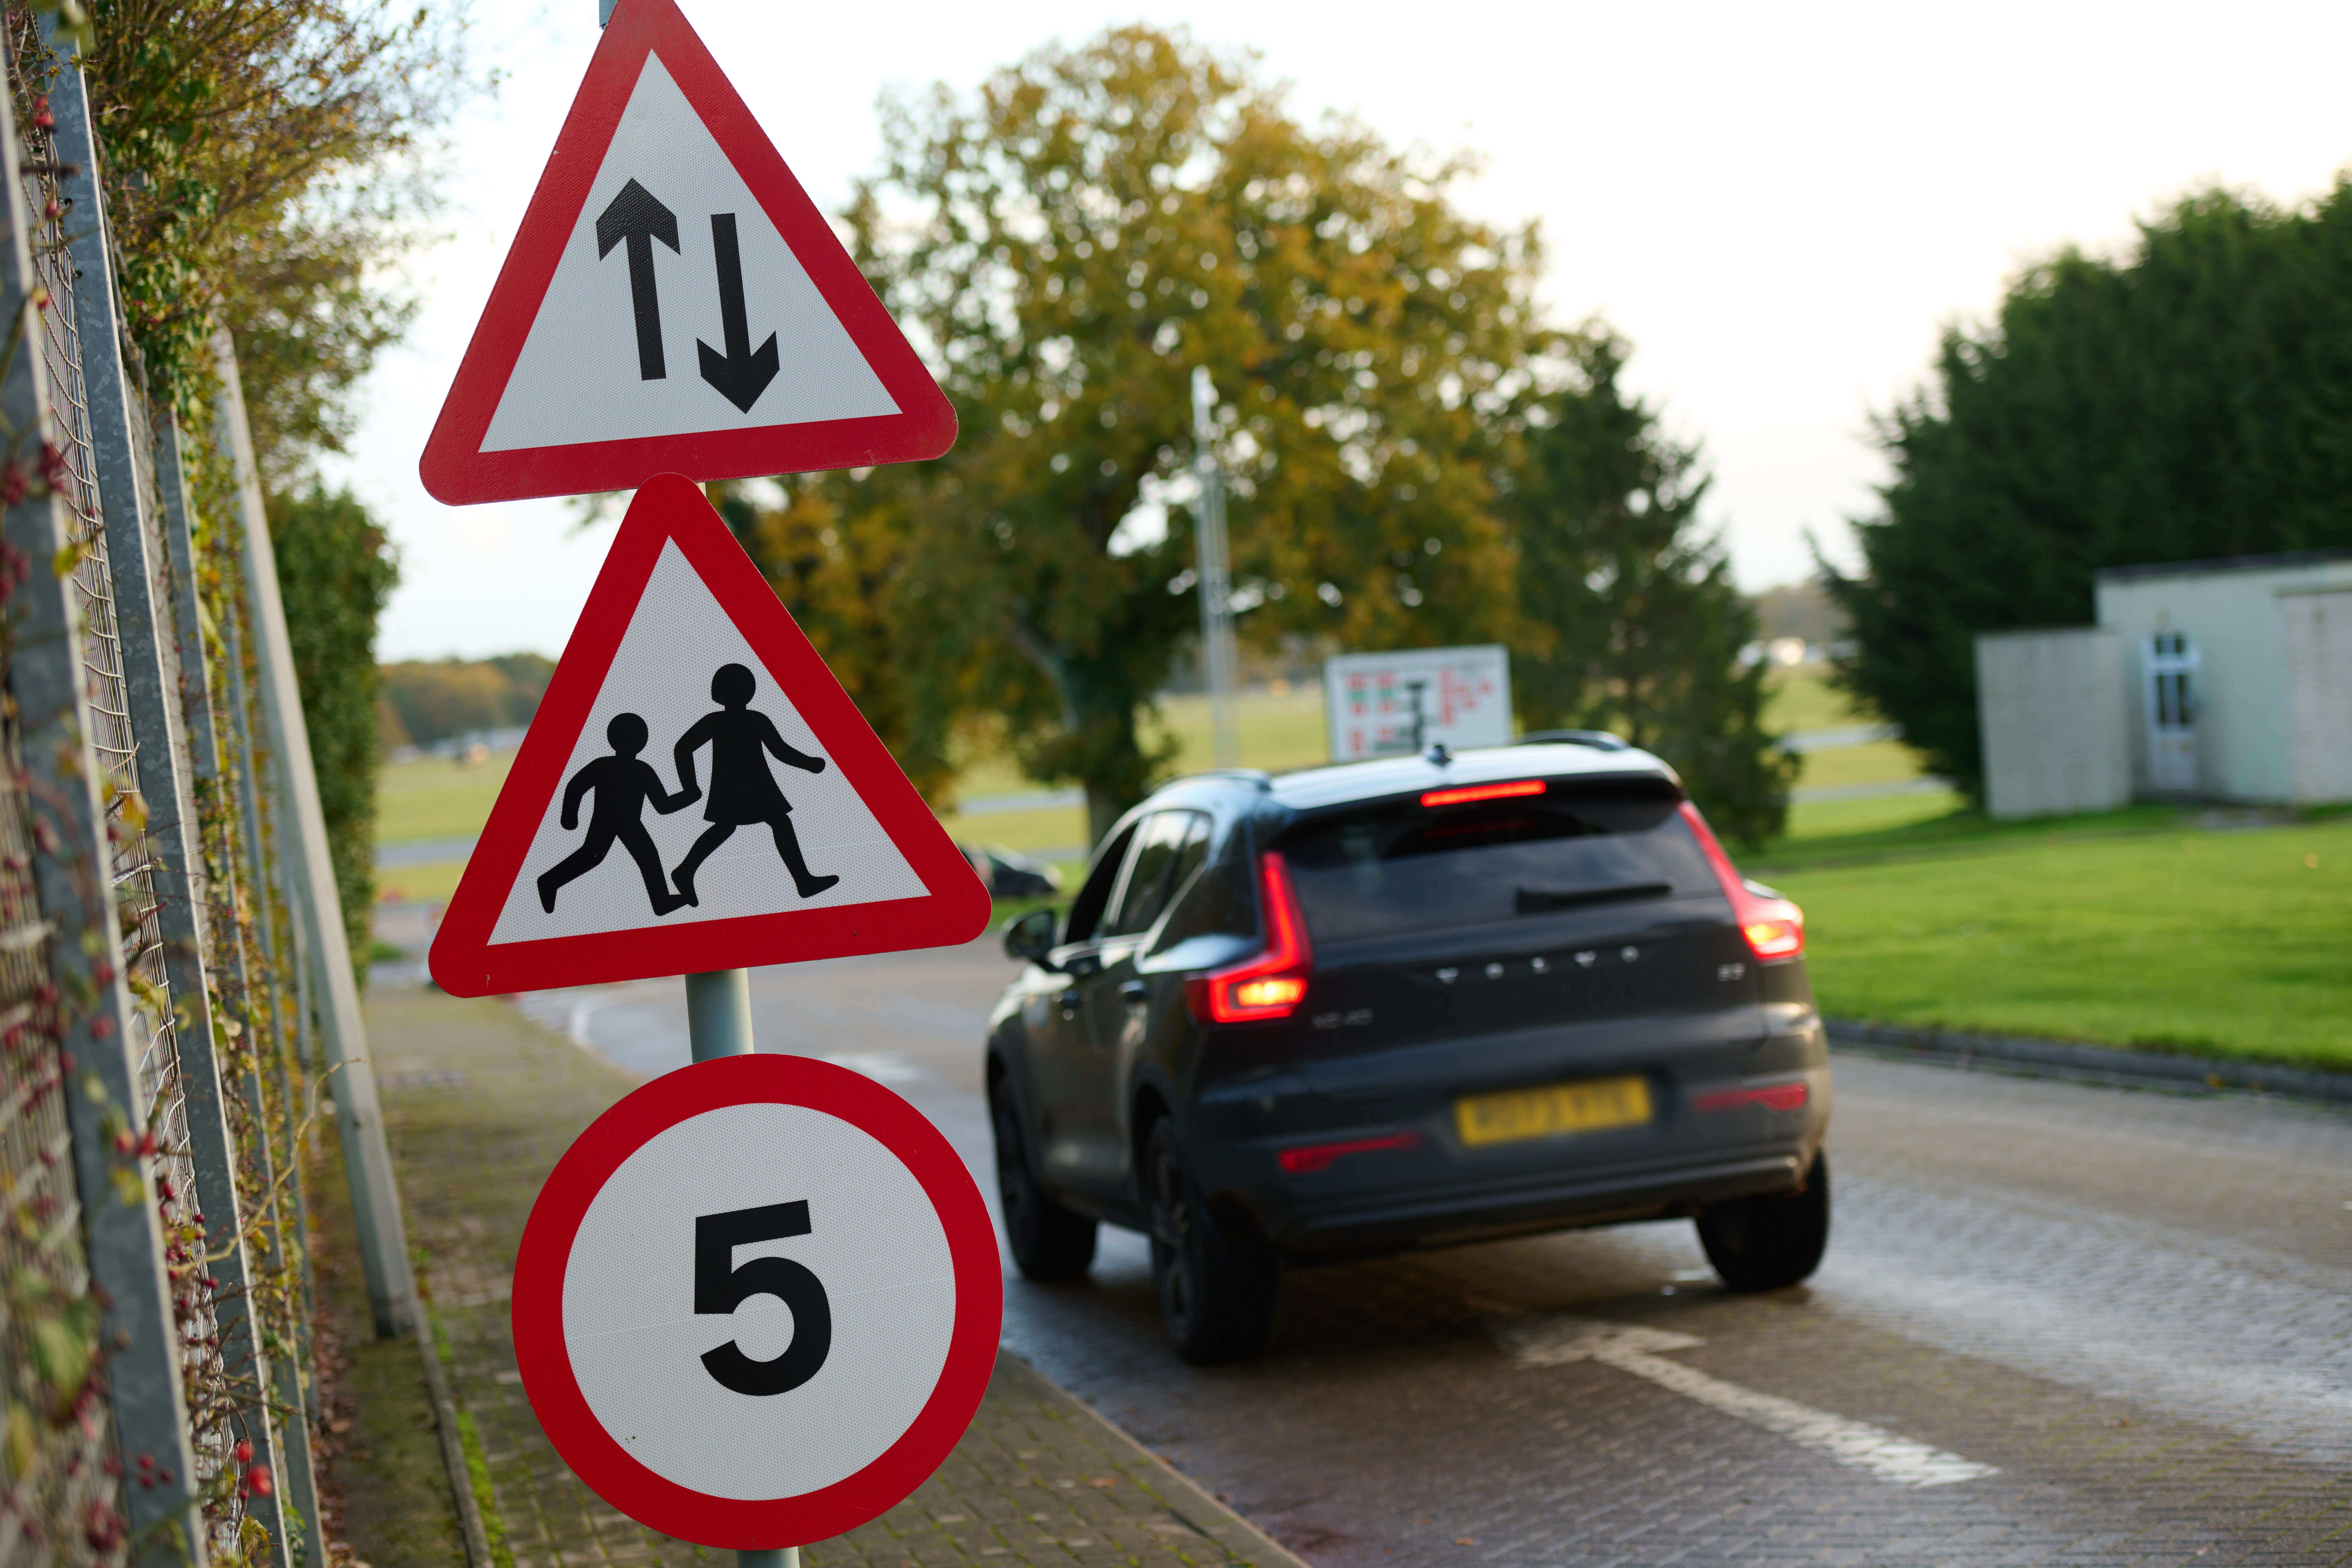 Road risk management basics for business